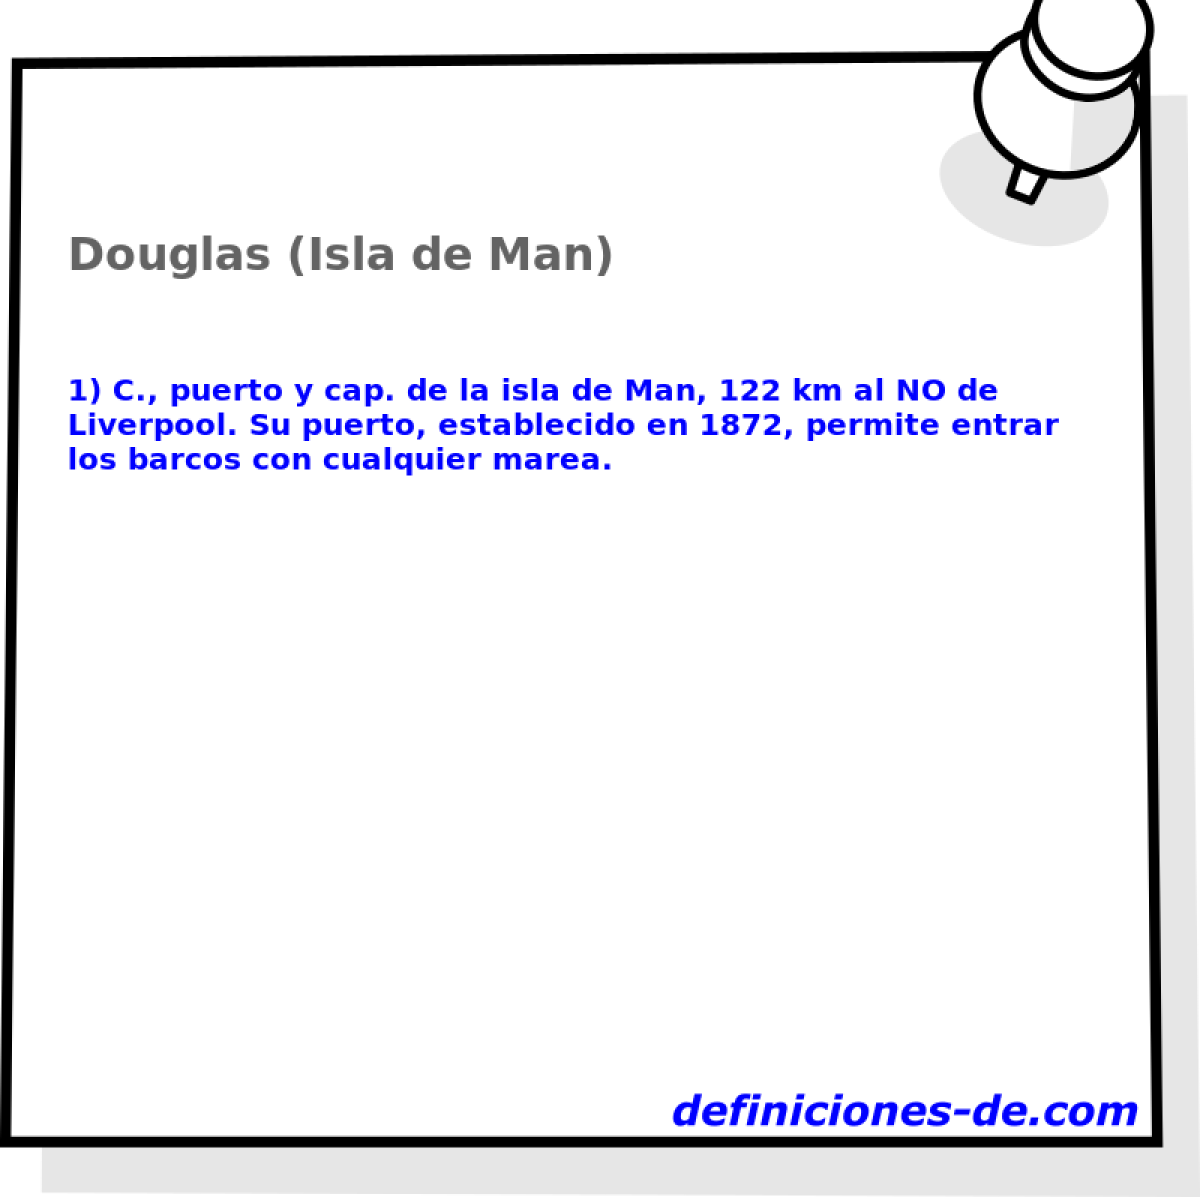 Douglas (Isla de Man) 